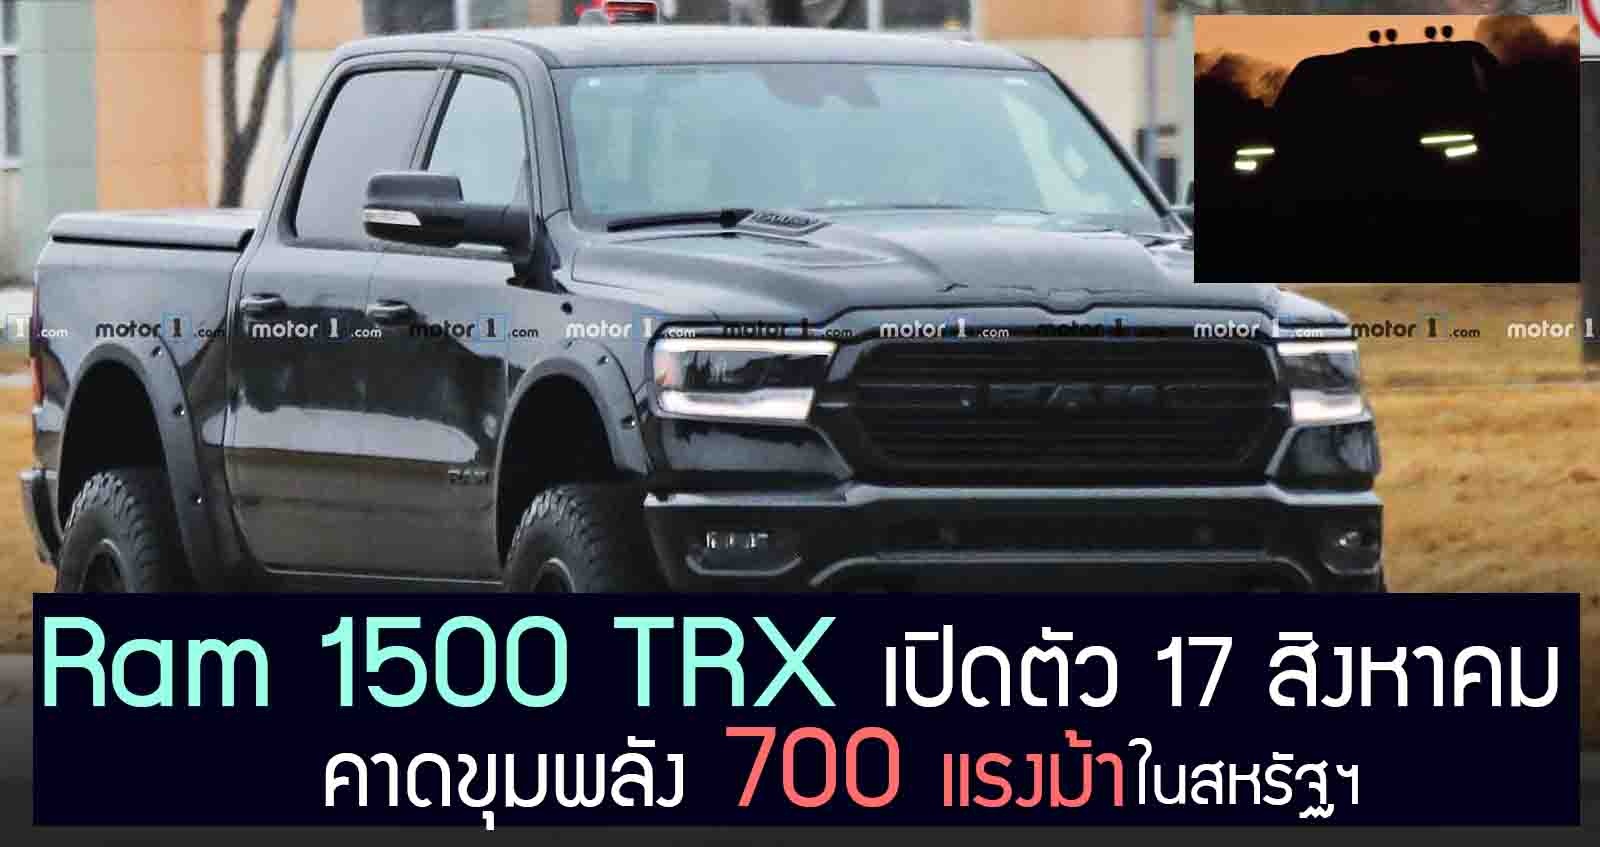 Ram 1500 TRX เปิดตัว 17 สิงหาคม คาดขุมพลัง 700 แรงม้า